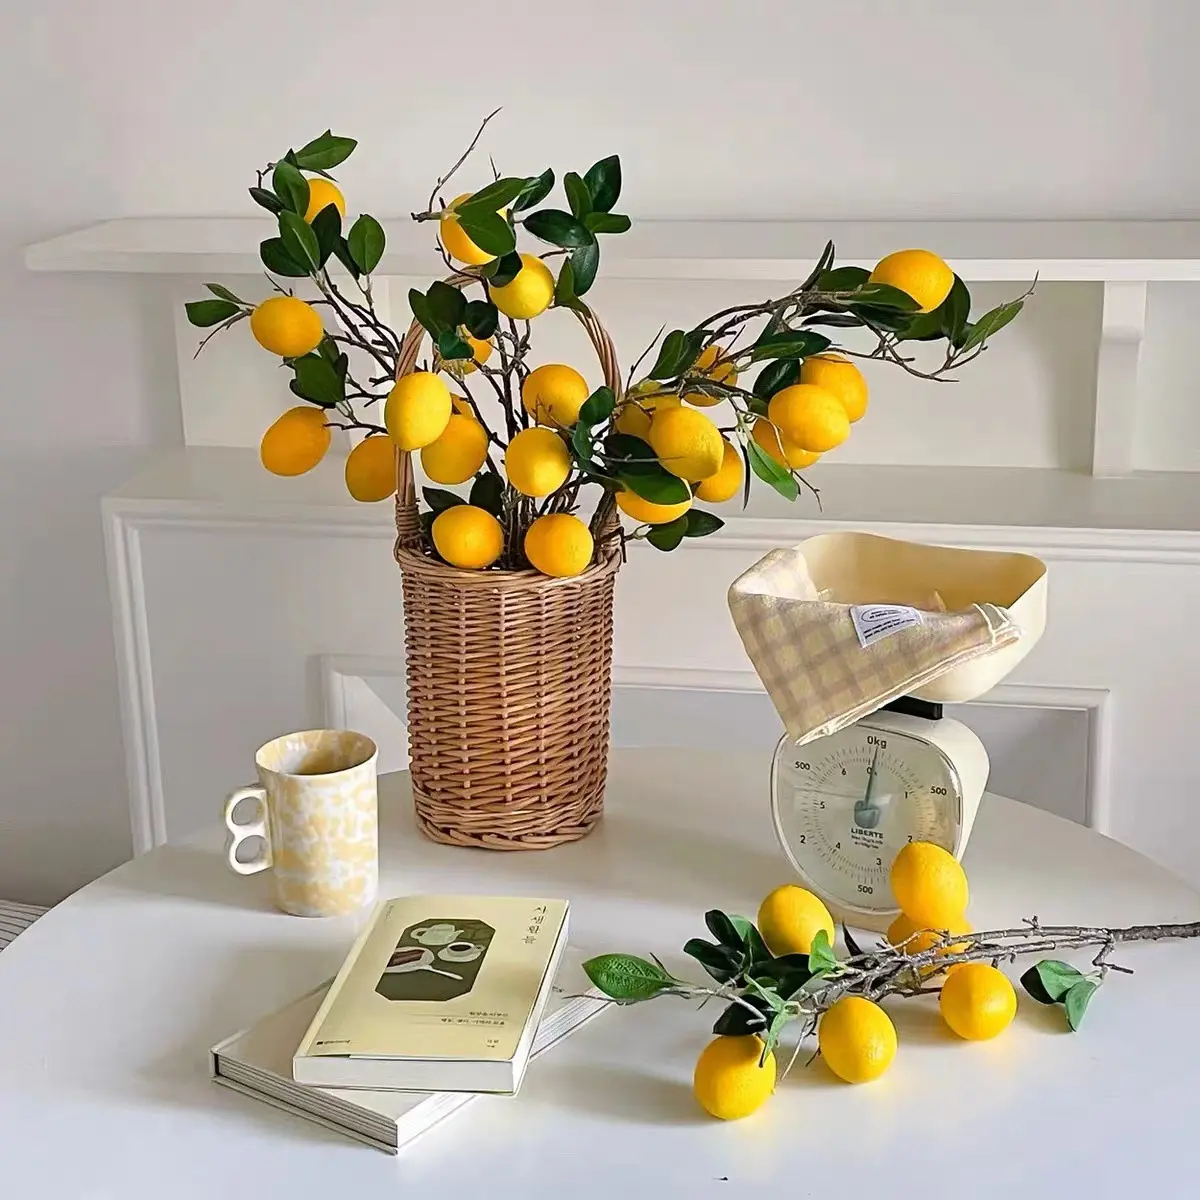 European-style small home decoration ornaments artificial lemon fruit plants